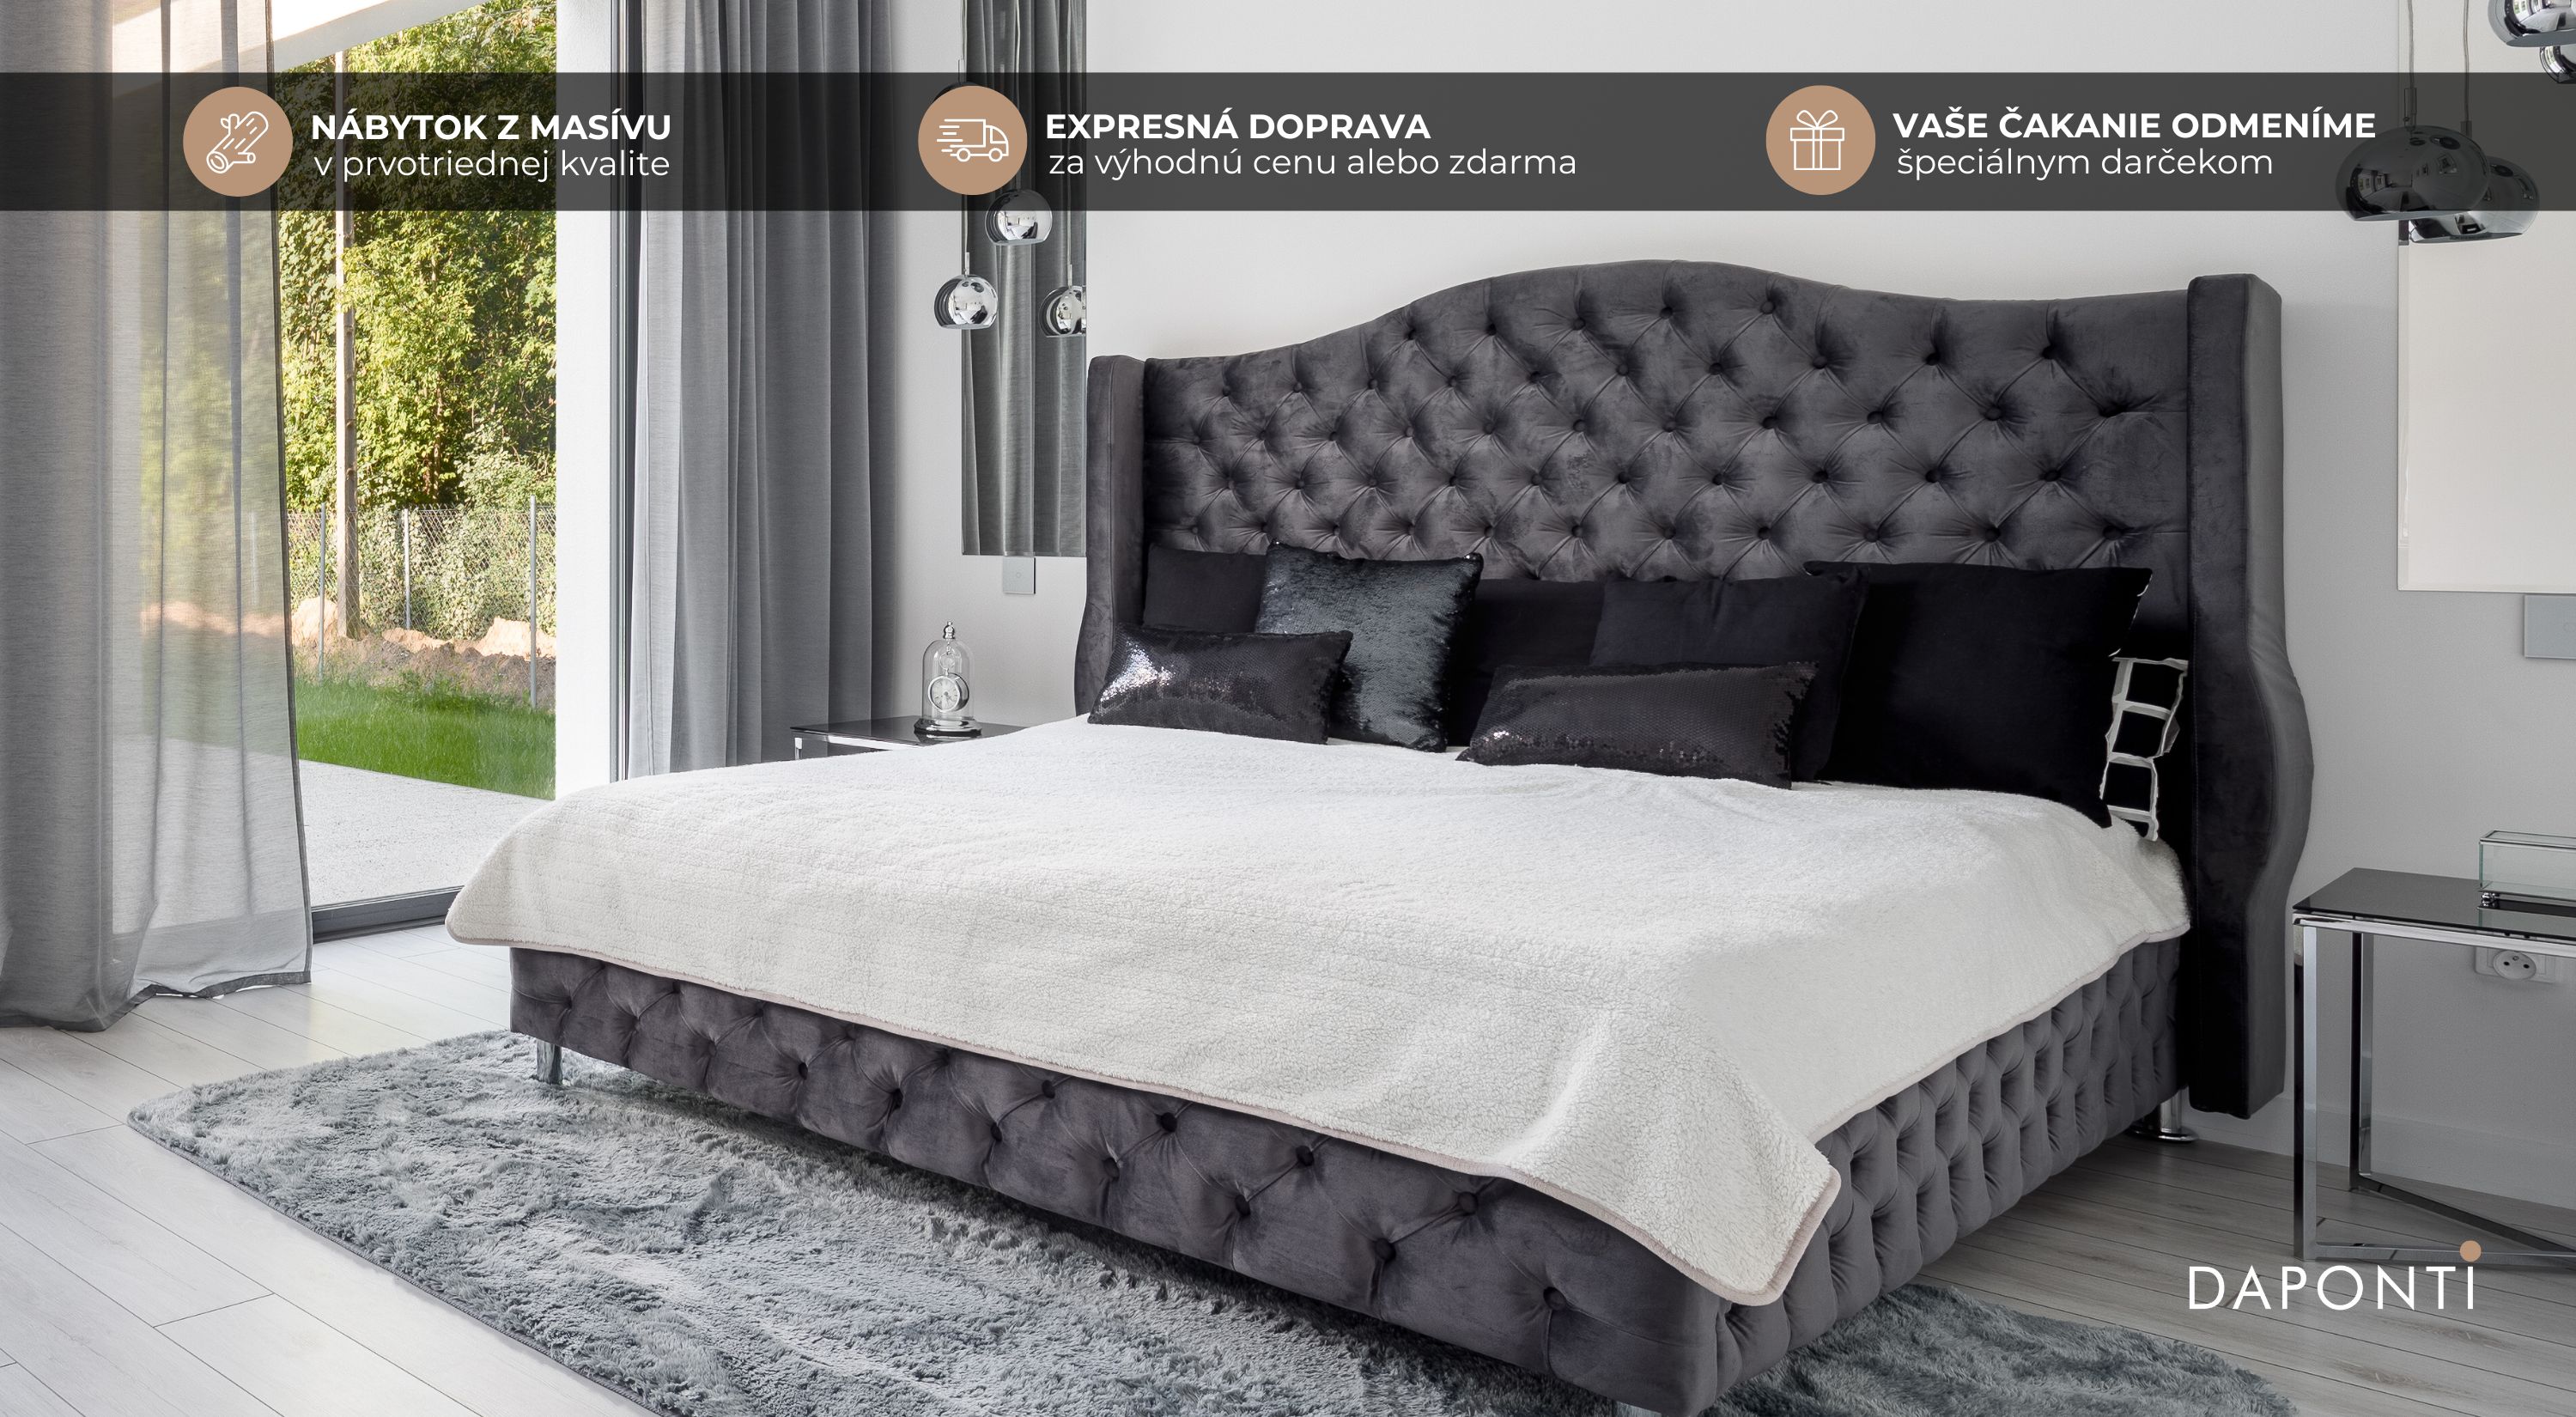 Veľká francúzska manželská posteľ s čalúnením sivej farby v rozmere 200x200 doplnená o minimalistické nočné stolíky a saténové vankúše čiernej farby.